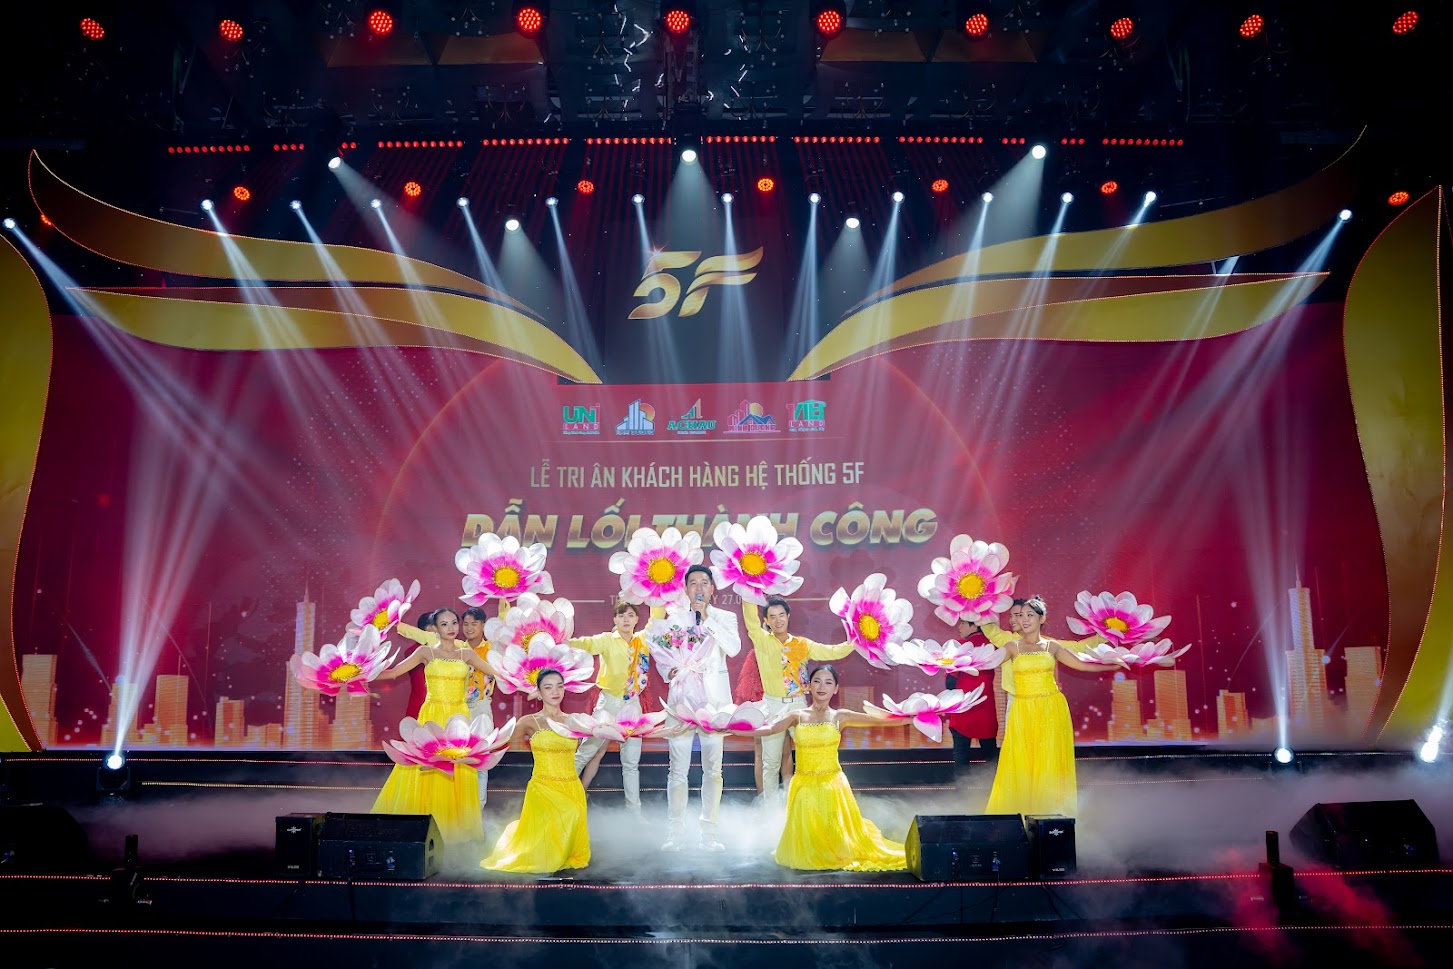 Nguyễn Phi Hùng là một trong những ca sĩ nổi tiếng tham gia chương trình và mang đến cho khách hàng những tiết mục biểu diễn để lại nhiều ấn tượng.